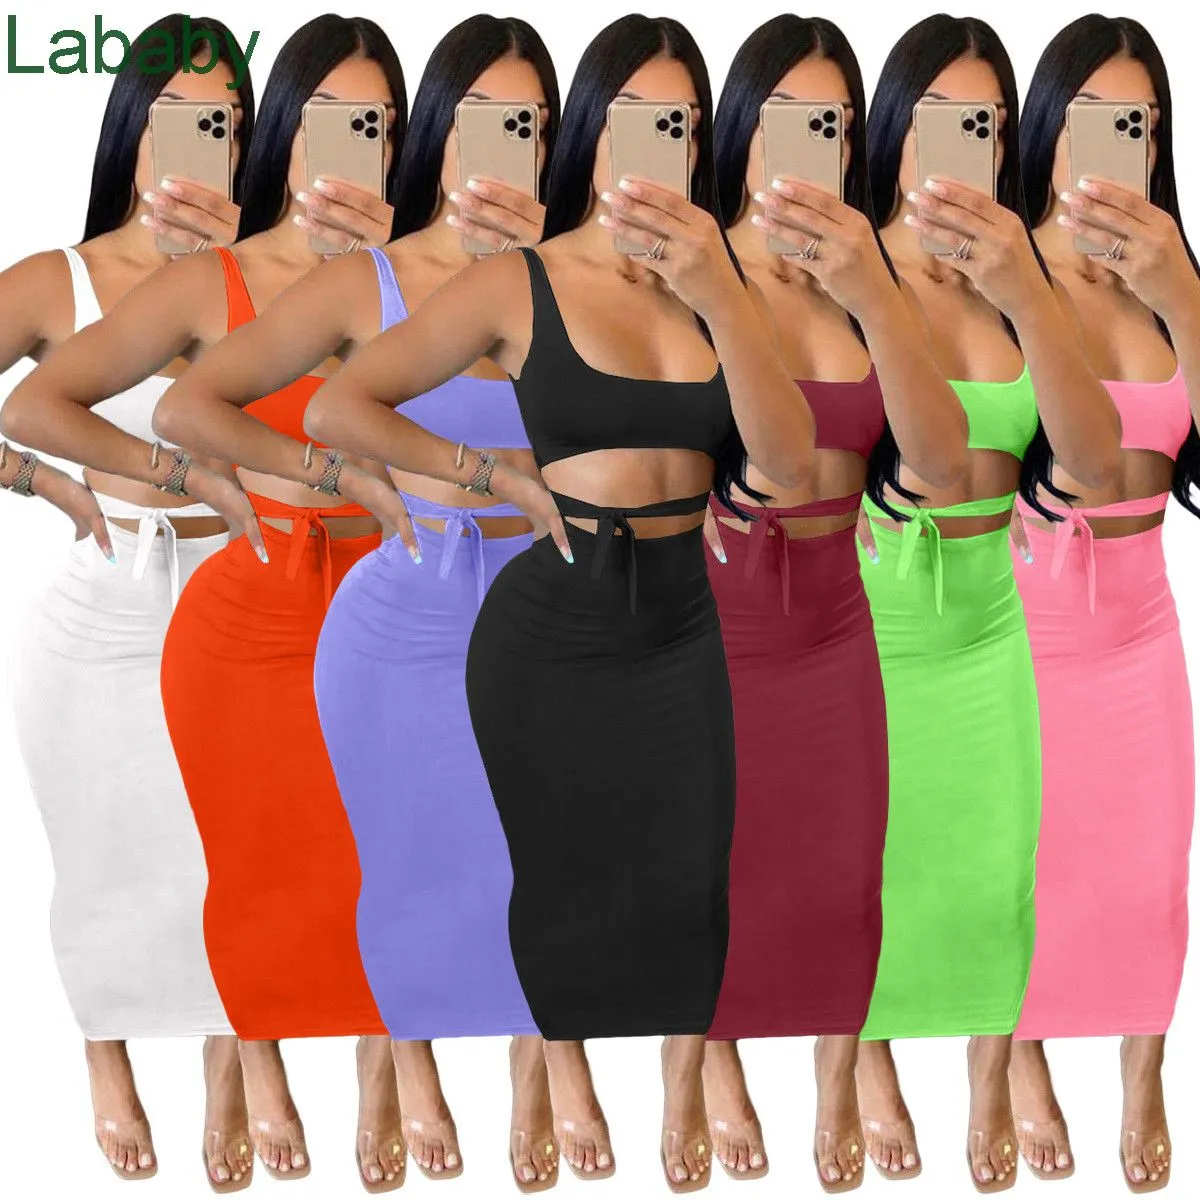 Женщины MIDI платье дизайнер тонкий сексуальные трексеи чистый цвет подвеска открытый живот многоцветный длинный юбка подходит для женщин наряды одежды 7 цветов